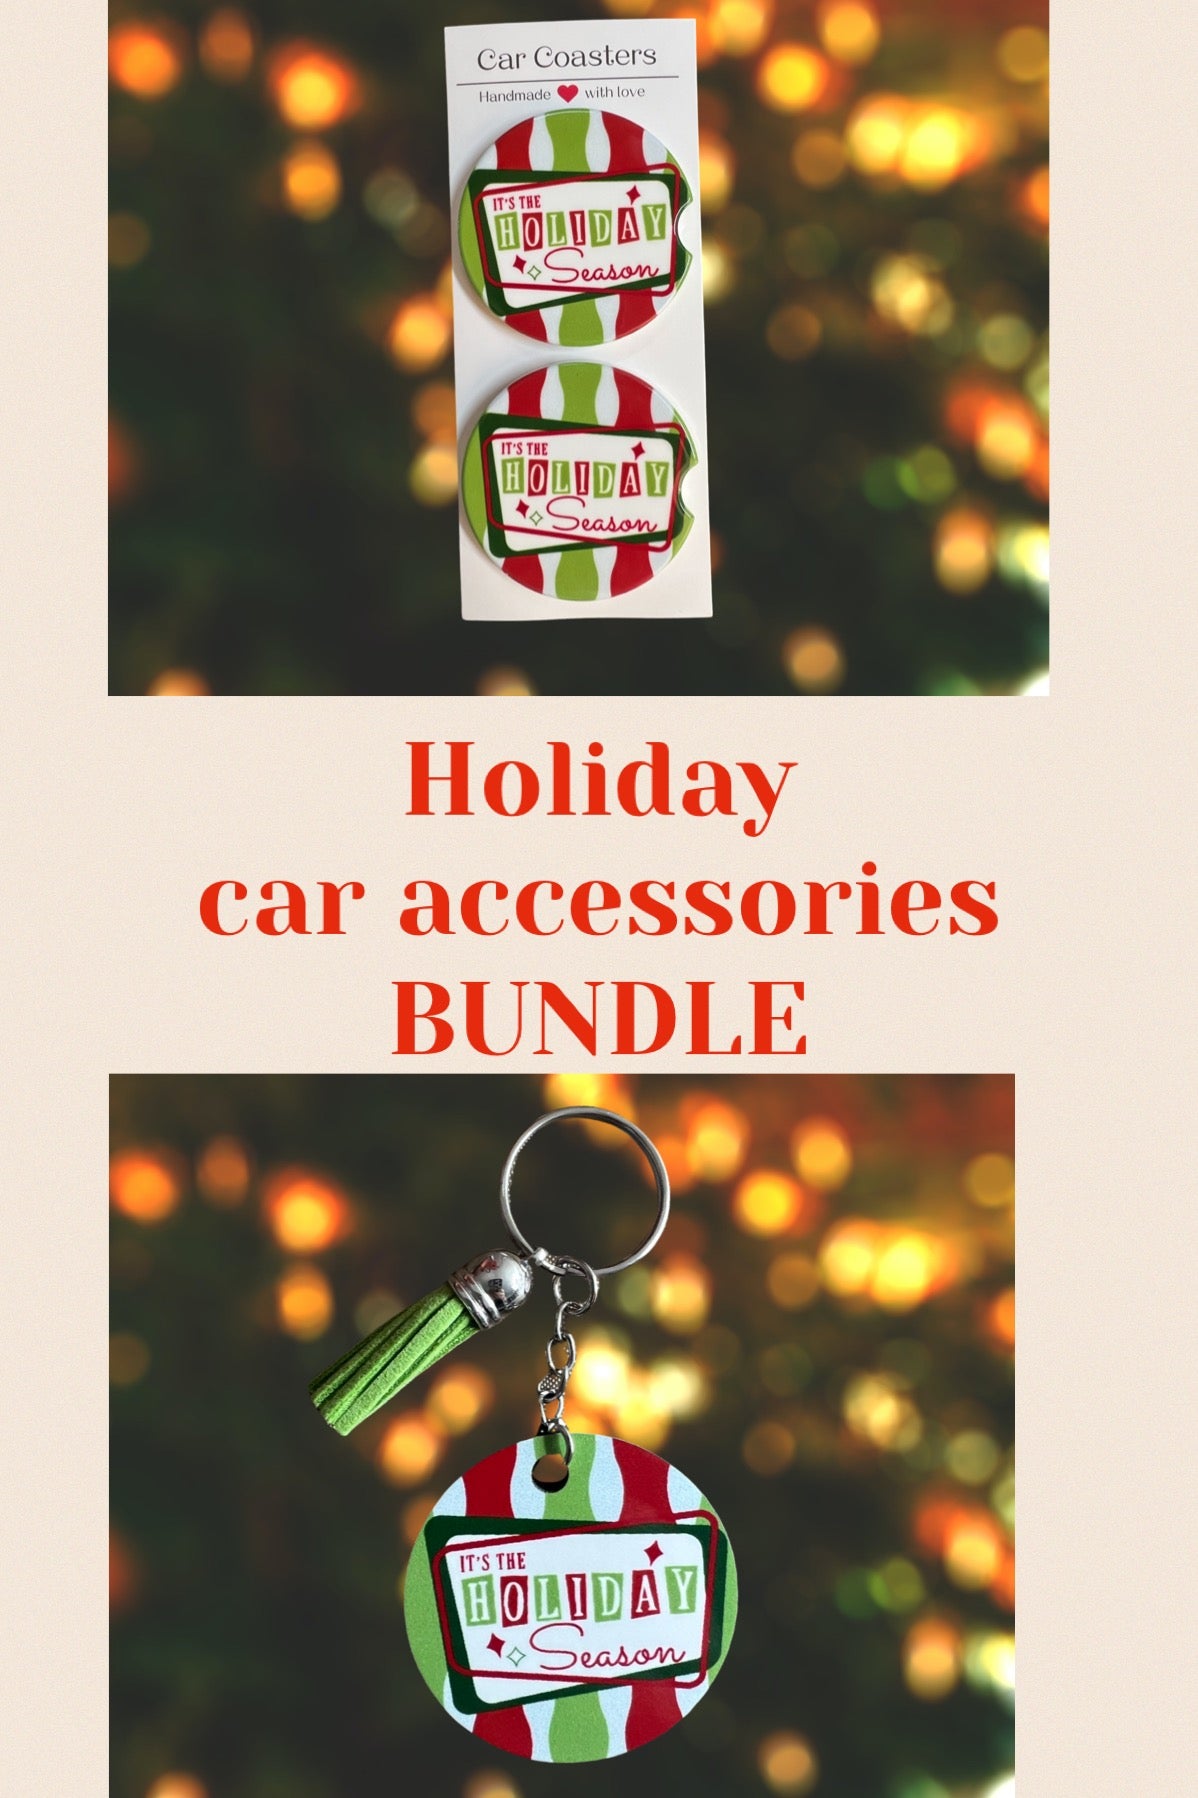 Car accessories bundle